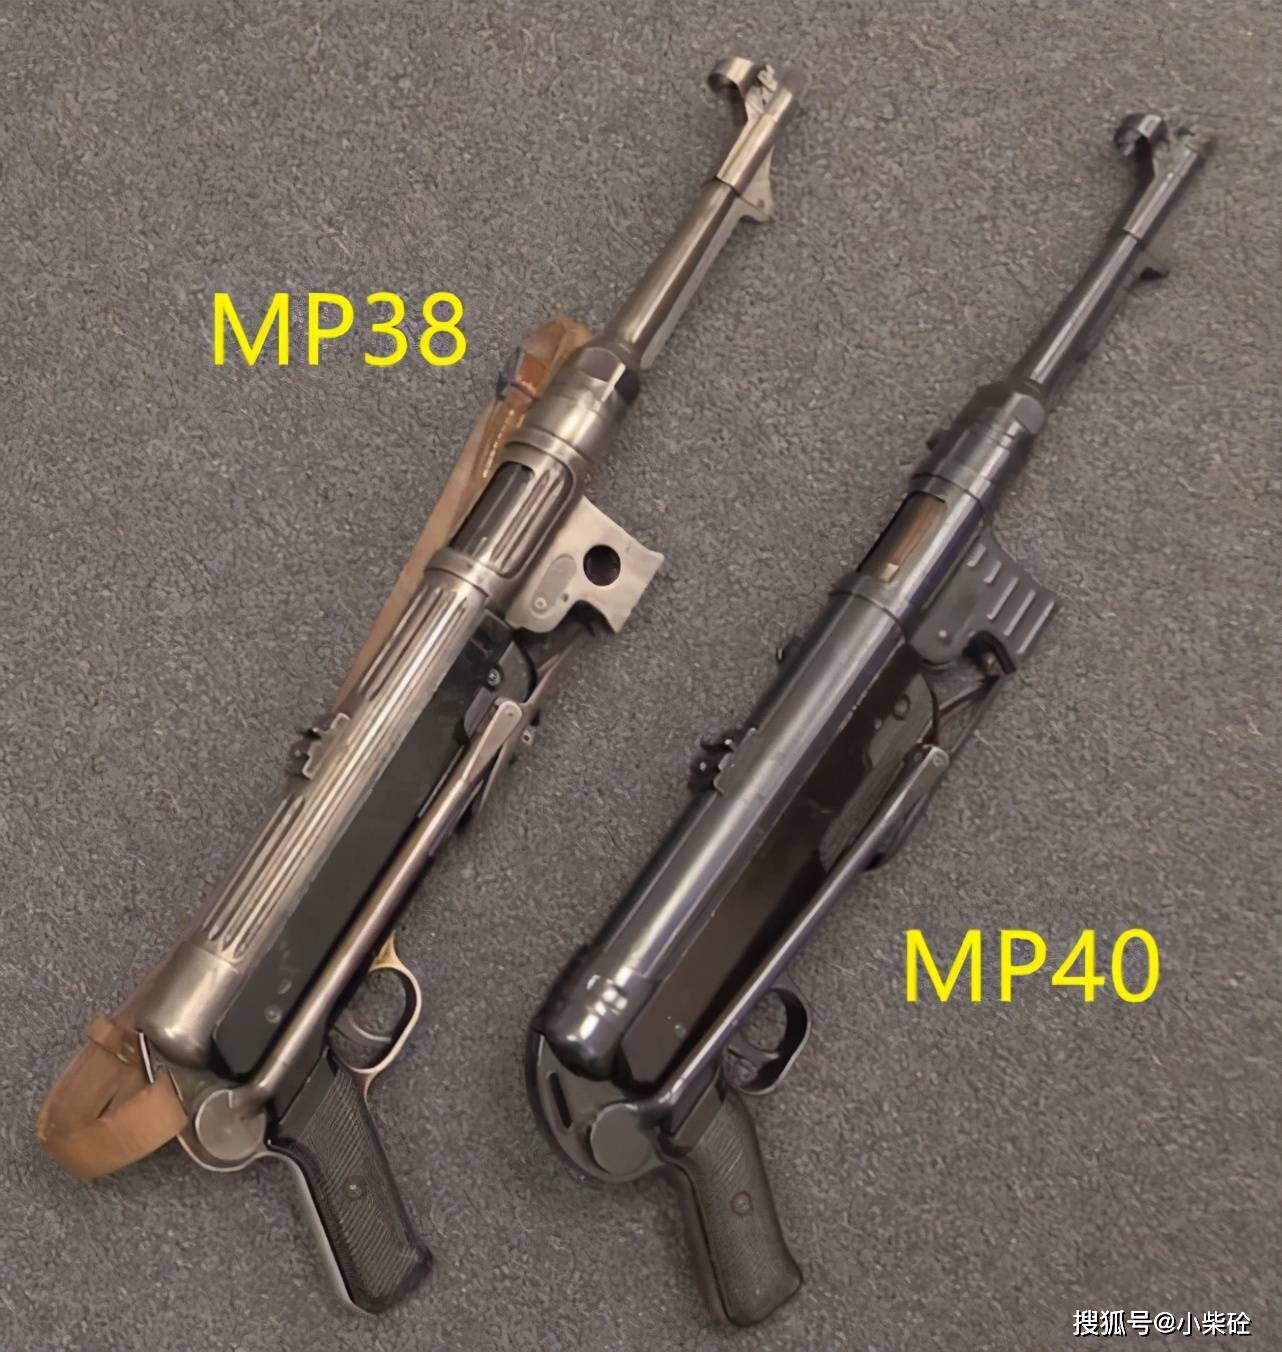 mp38与mp40冲锋枪,工艺从铣削变冲压,还有哪些改动?